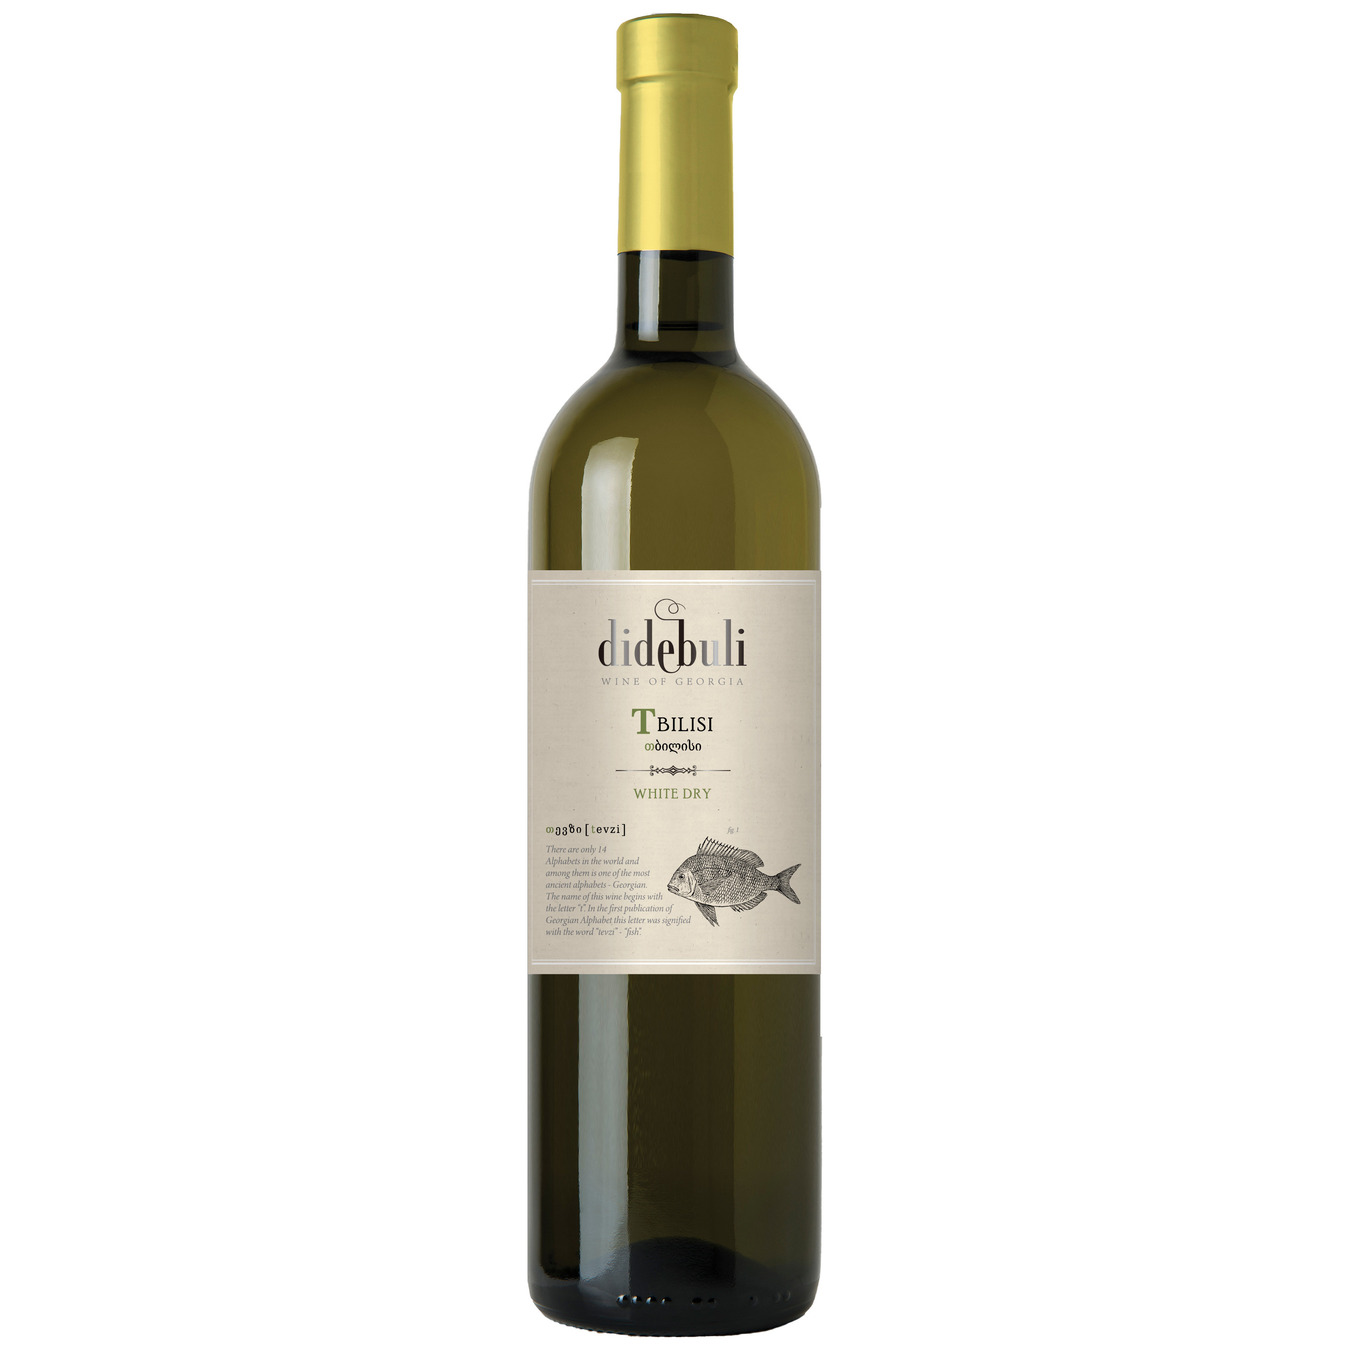 Didebuli Tbilisi white dry wine 11% 0,75l